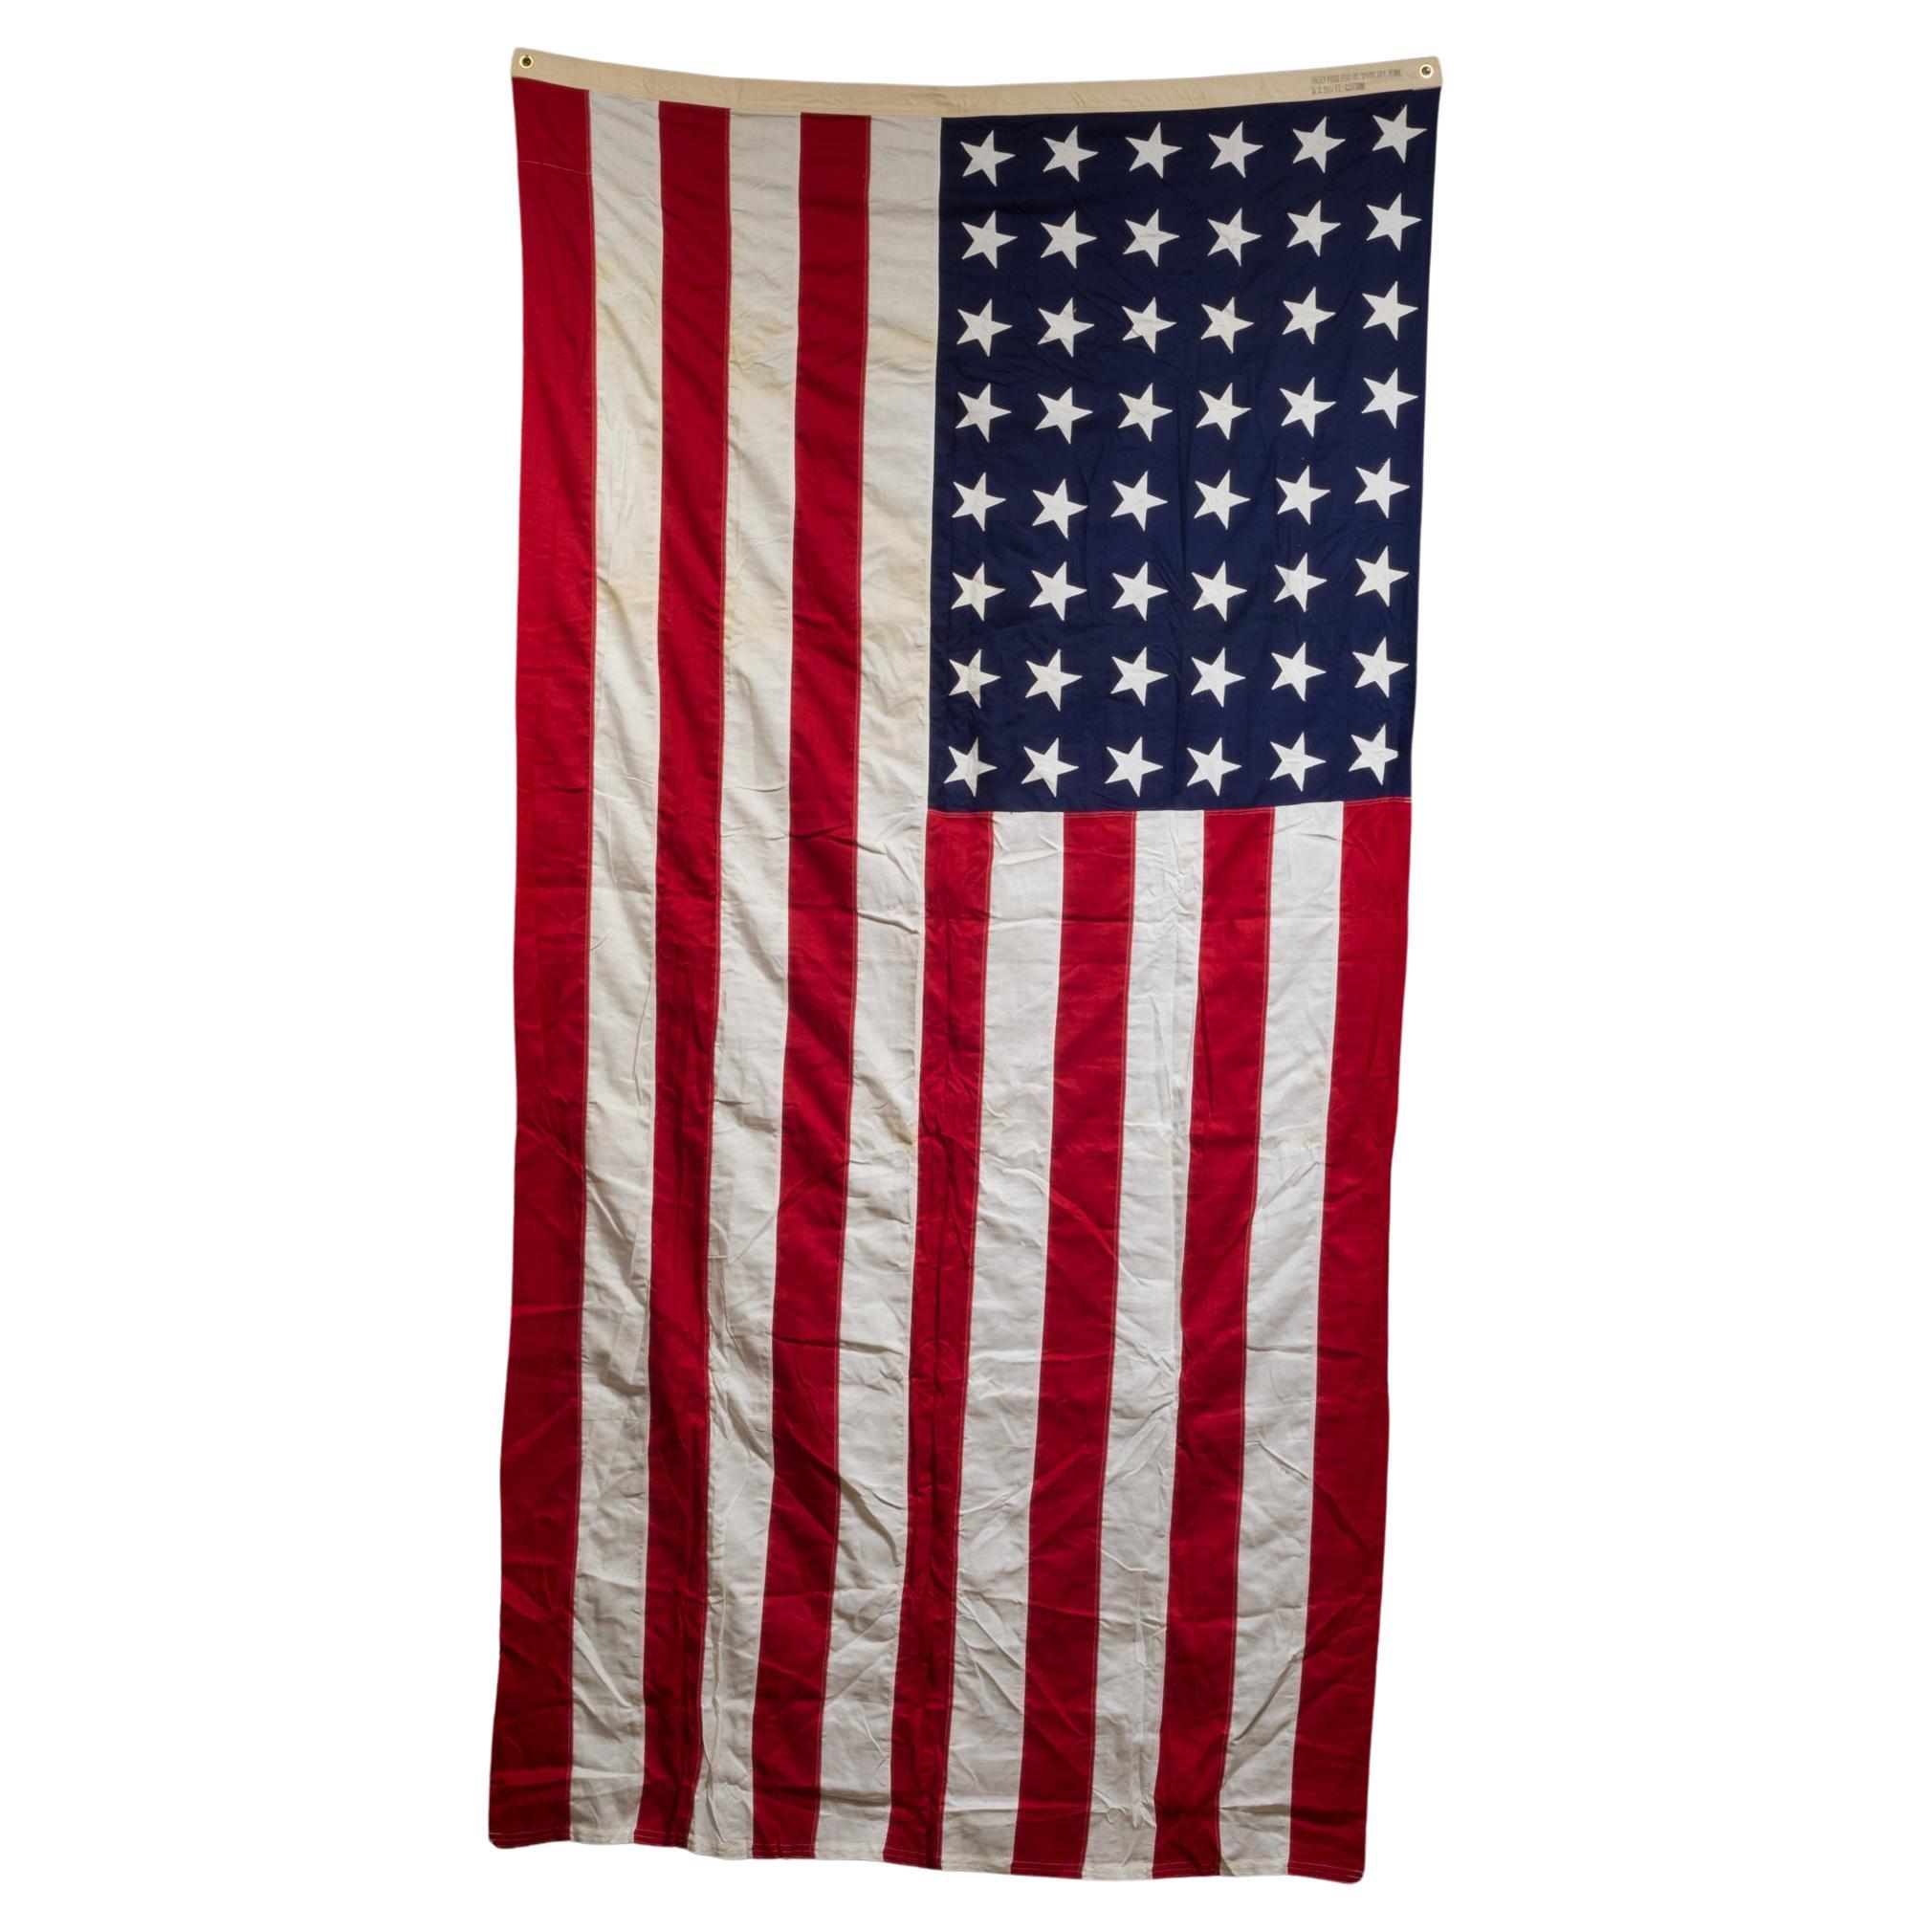 Monumentale amerikanische Flagge „Valley Forge“ mit 48 Sternen, ca. 1940-1950  (KOSTENLOSER VERSAND)